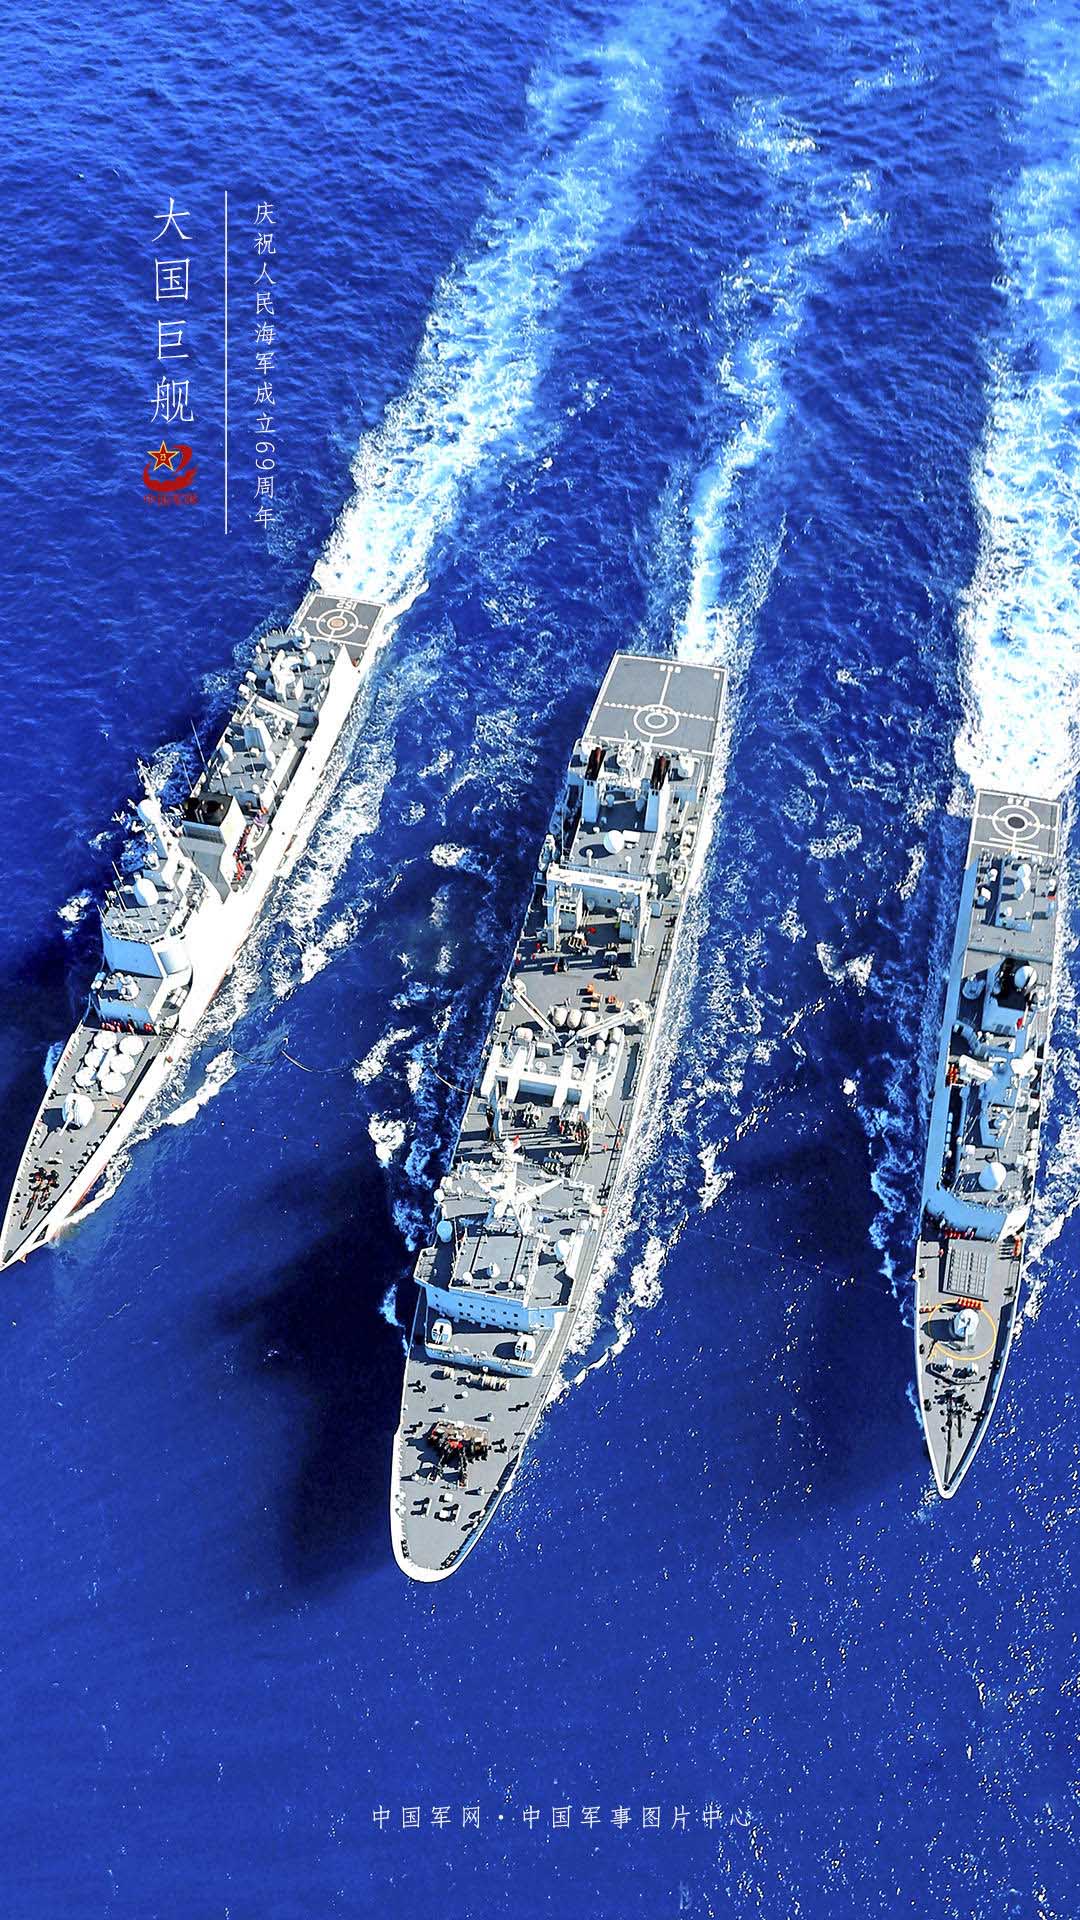 壁纸|大国巨舰 踏浪而来 庆祝人民海军成立69周年 - 中国军网